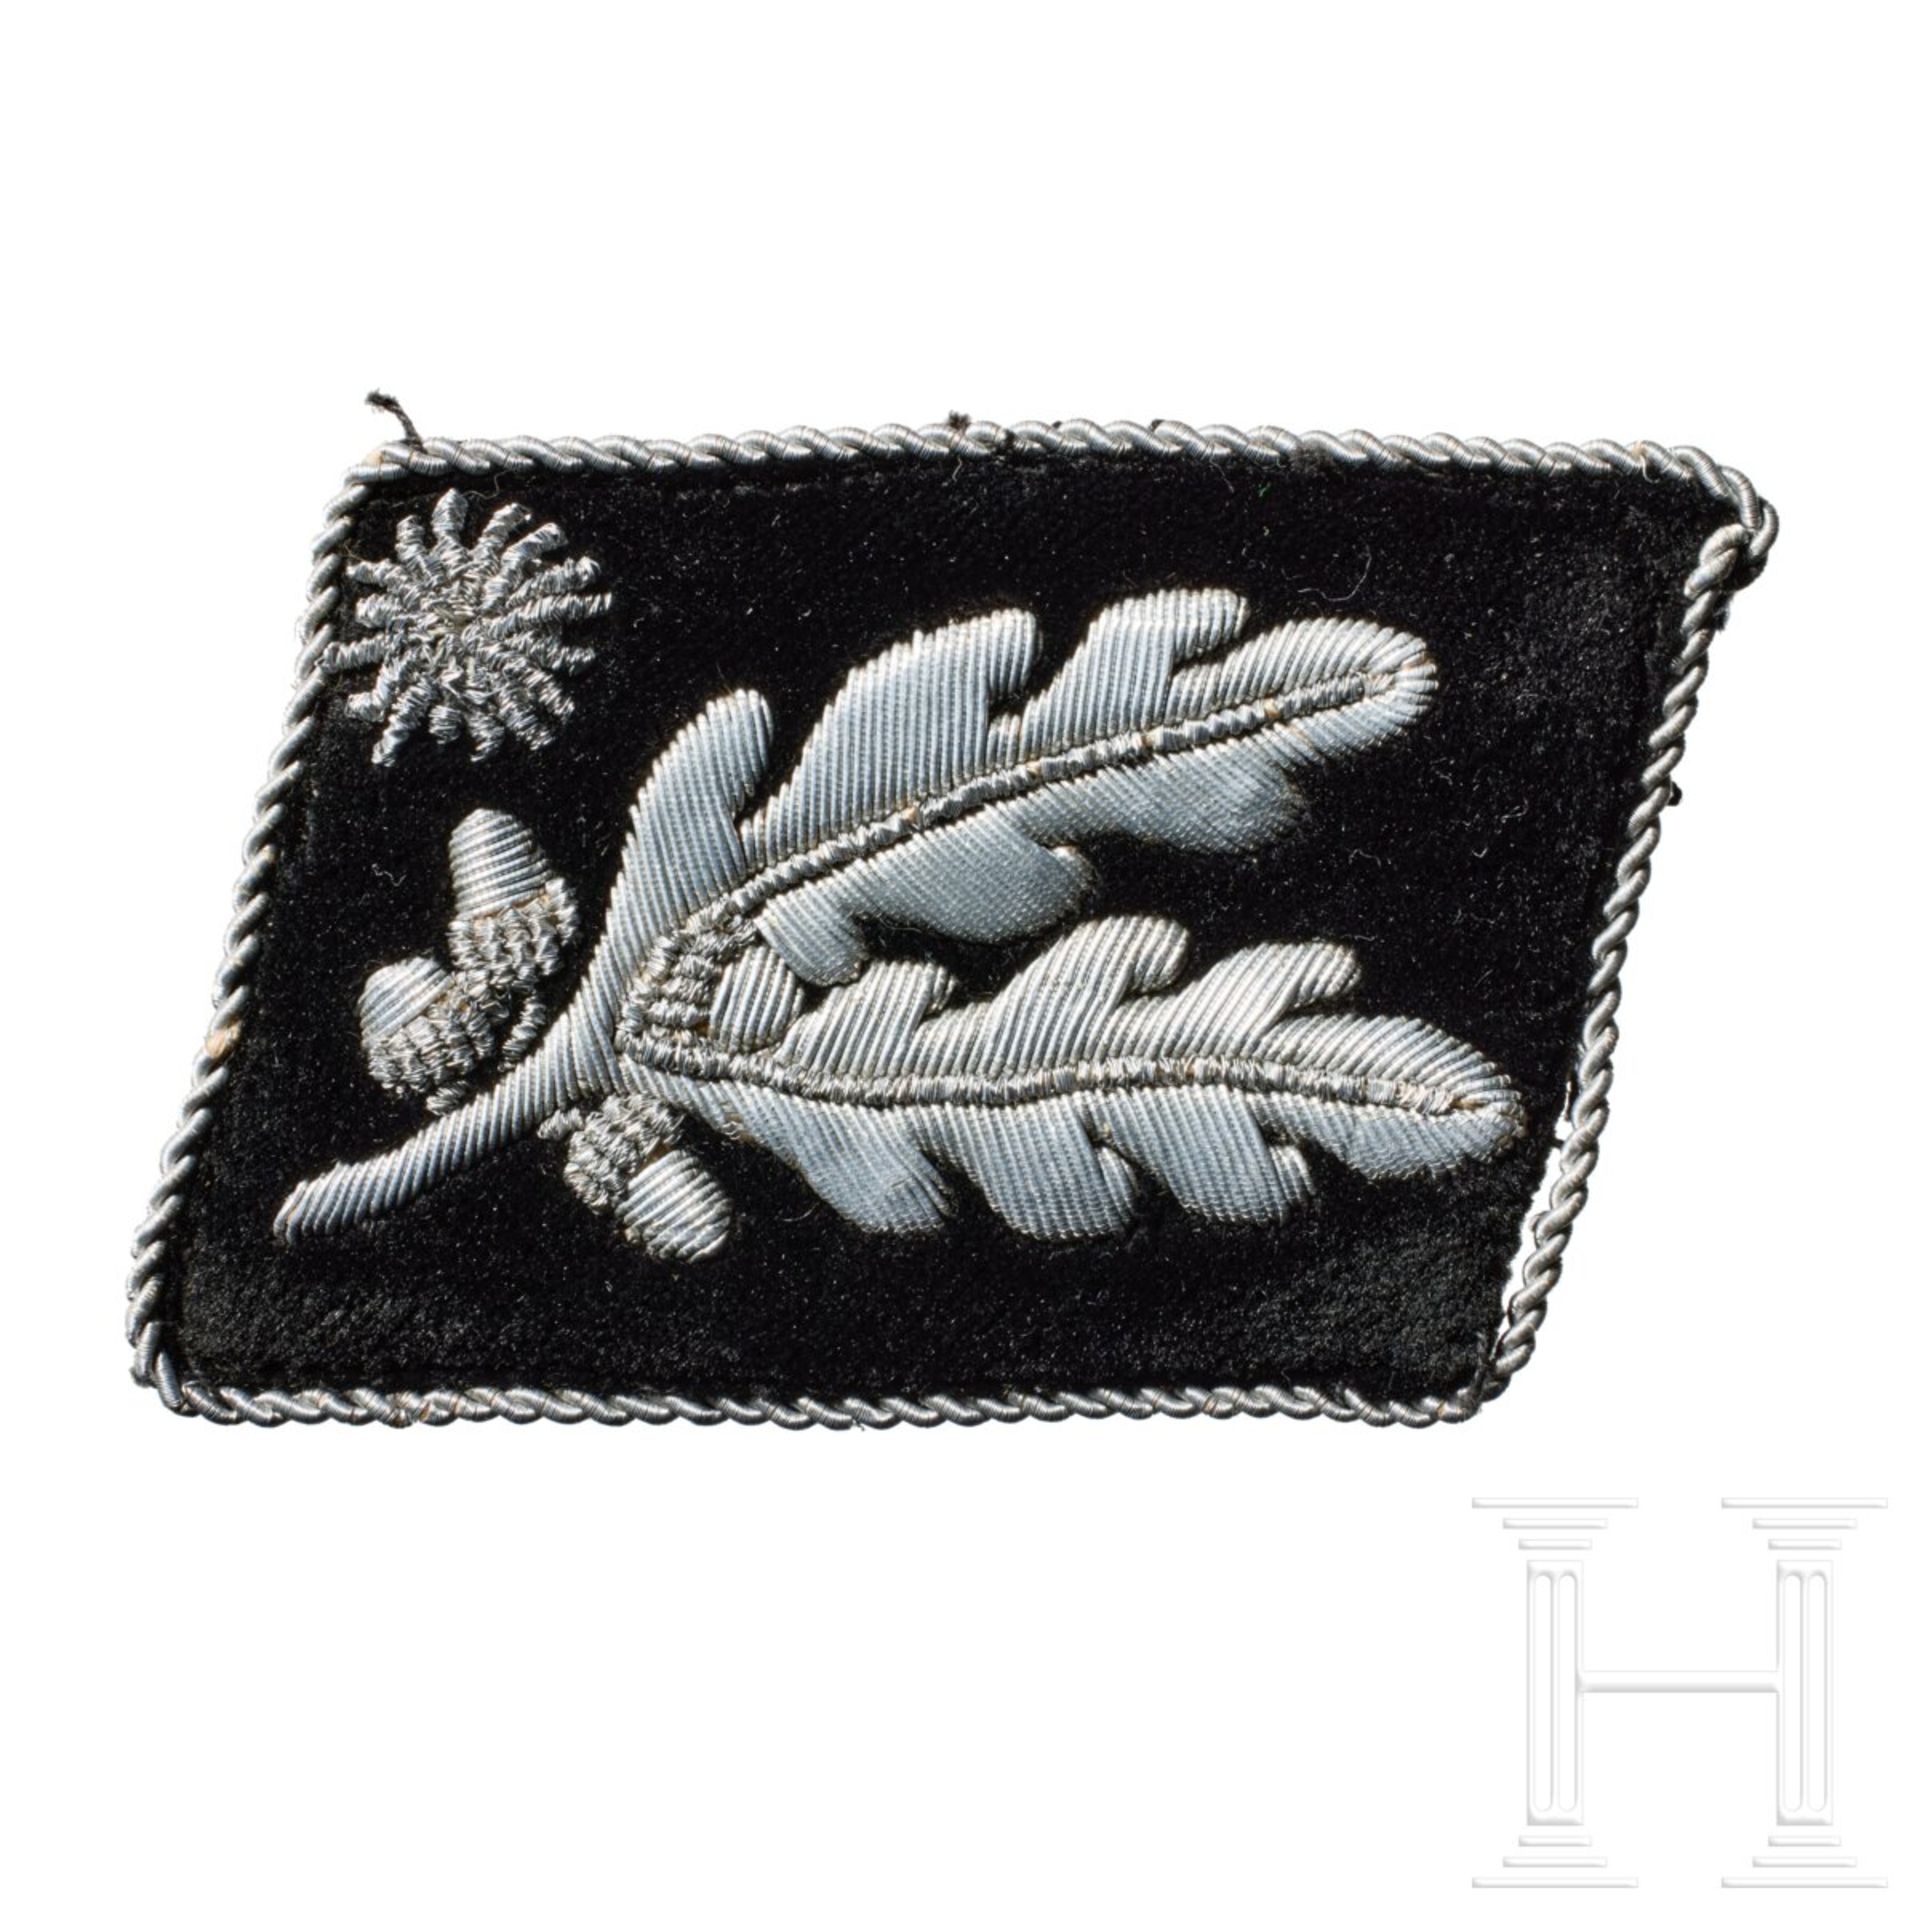 A Left Collar Tab for SS-Brigadeführer, 1933-42